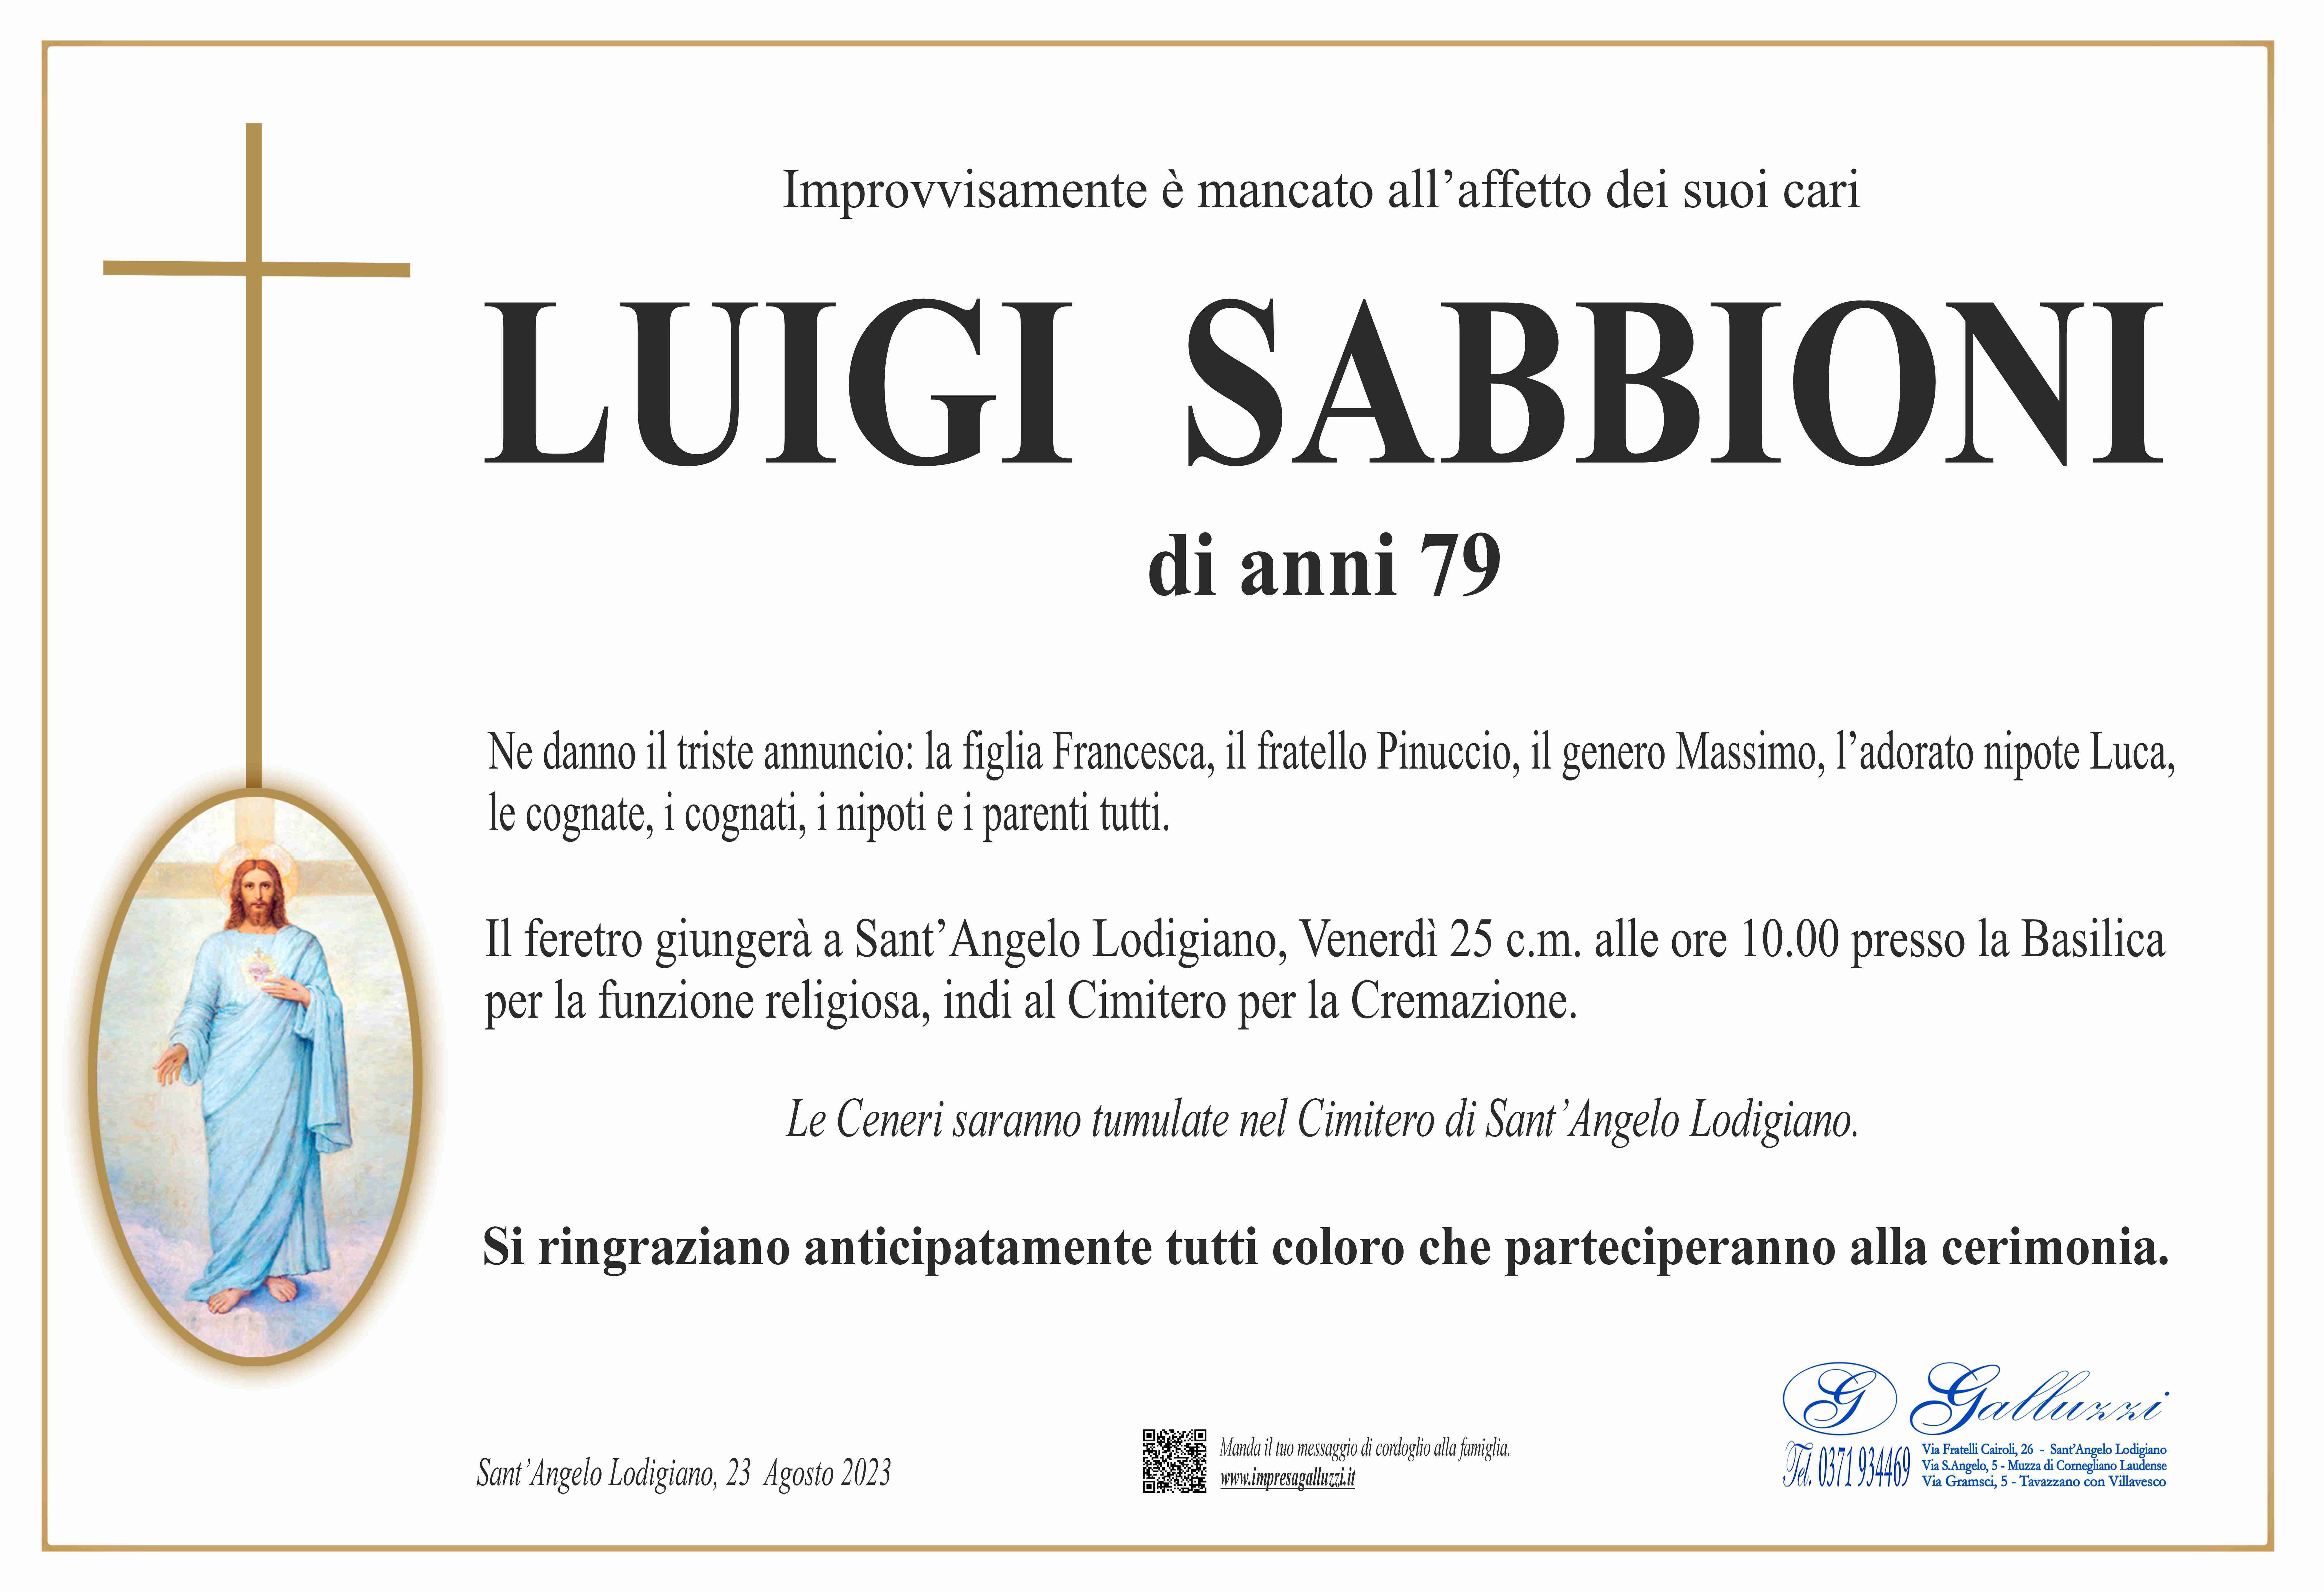 Luigi Sabbioni